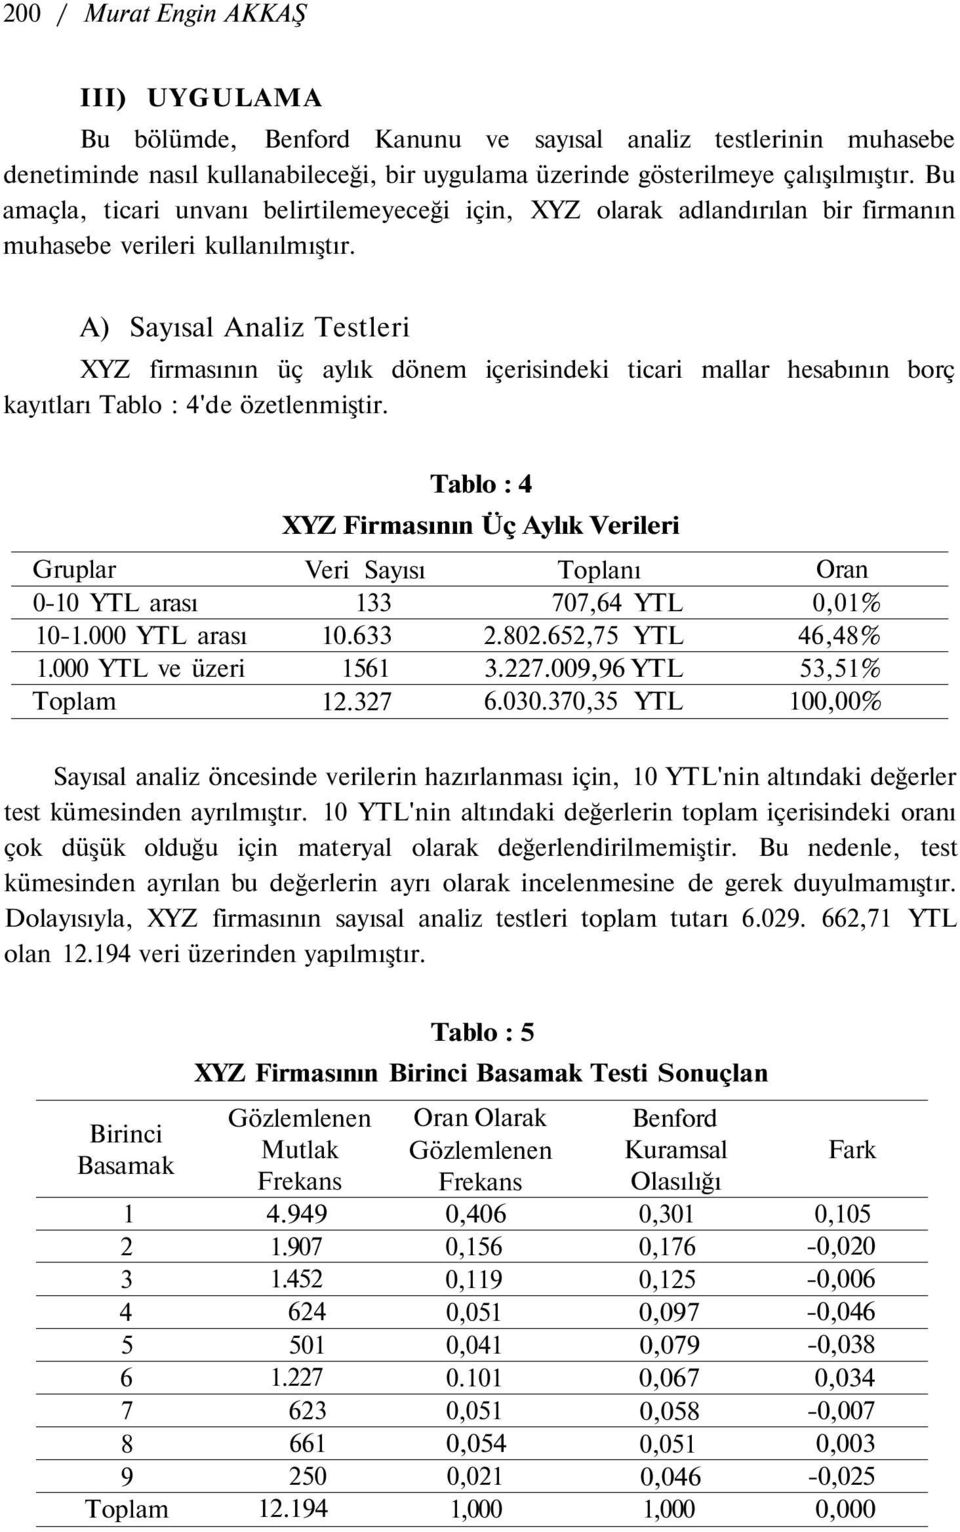 A) Sayısal Analiz Testleri XYZ firmasının üç aylık dönem içerisindeki ticari mallar hesabının borç kayıtları Tablo : 4'de özetlenmiştir. Gruplar 0-10 YTL arası 10-1.000 YTL arası 1.